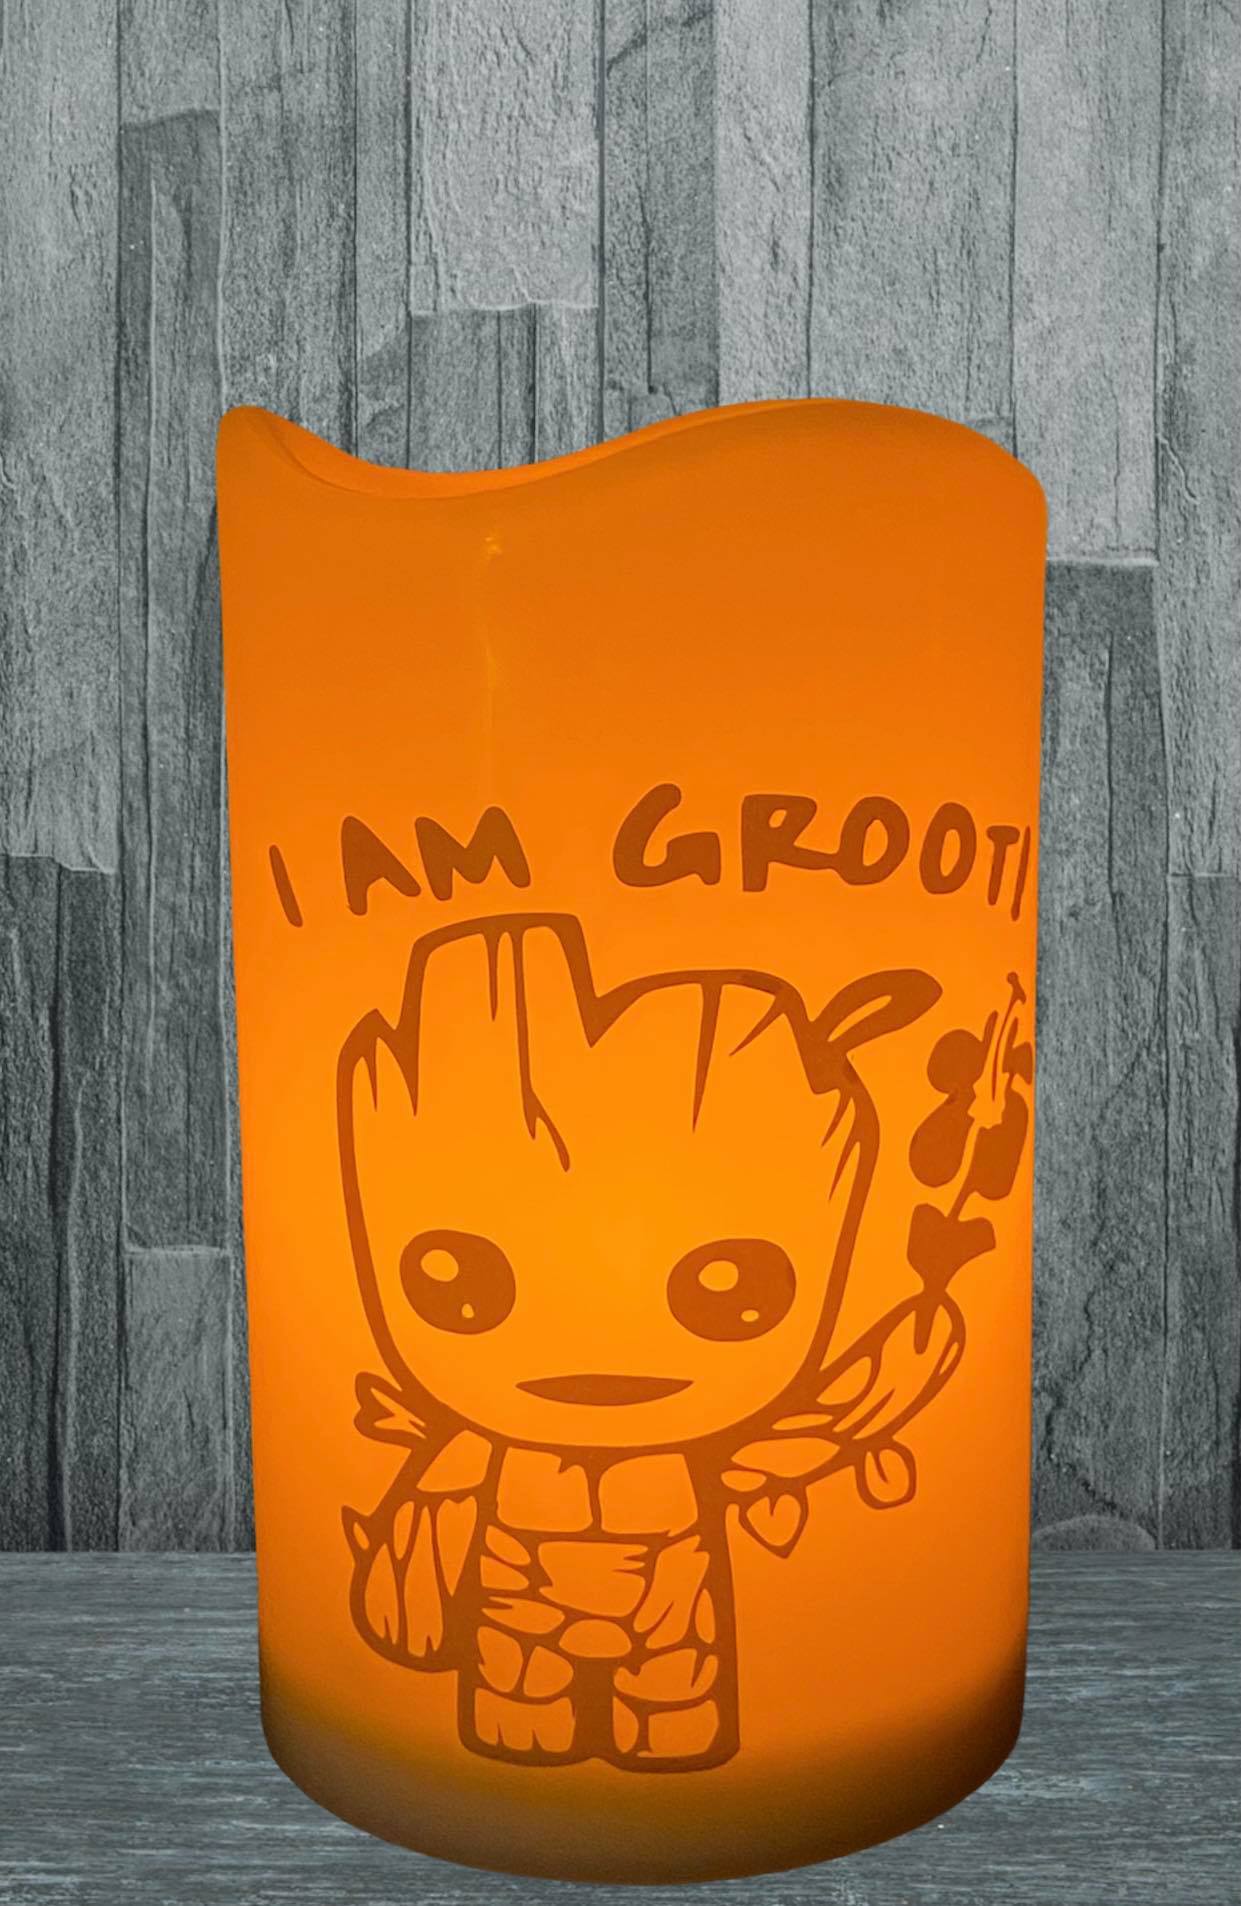 "I AM GROOT" LED Candle